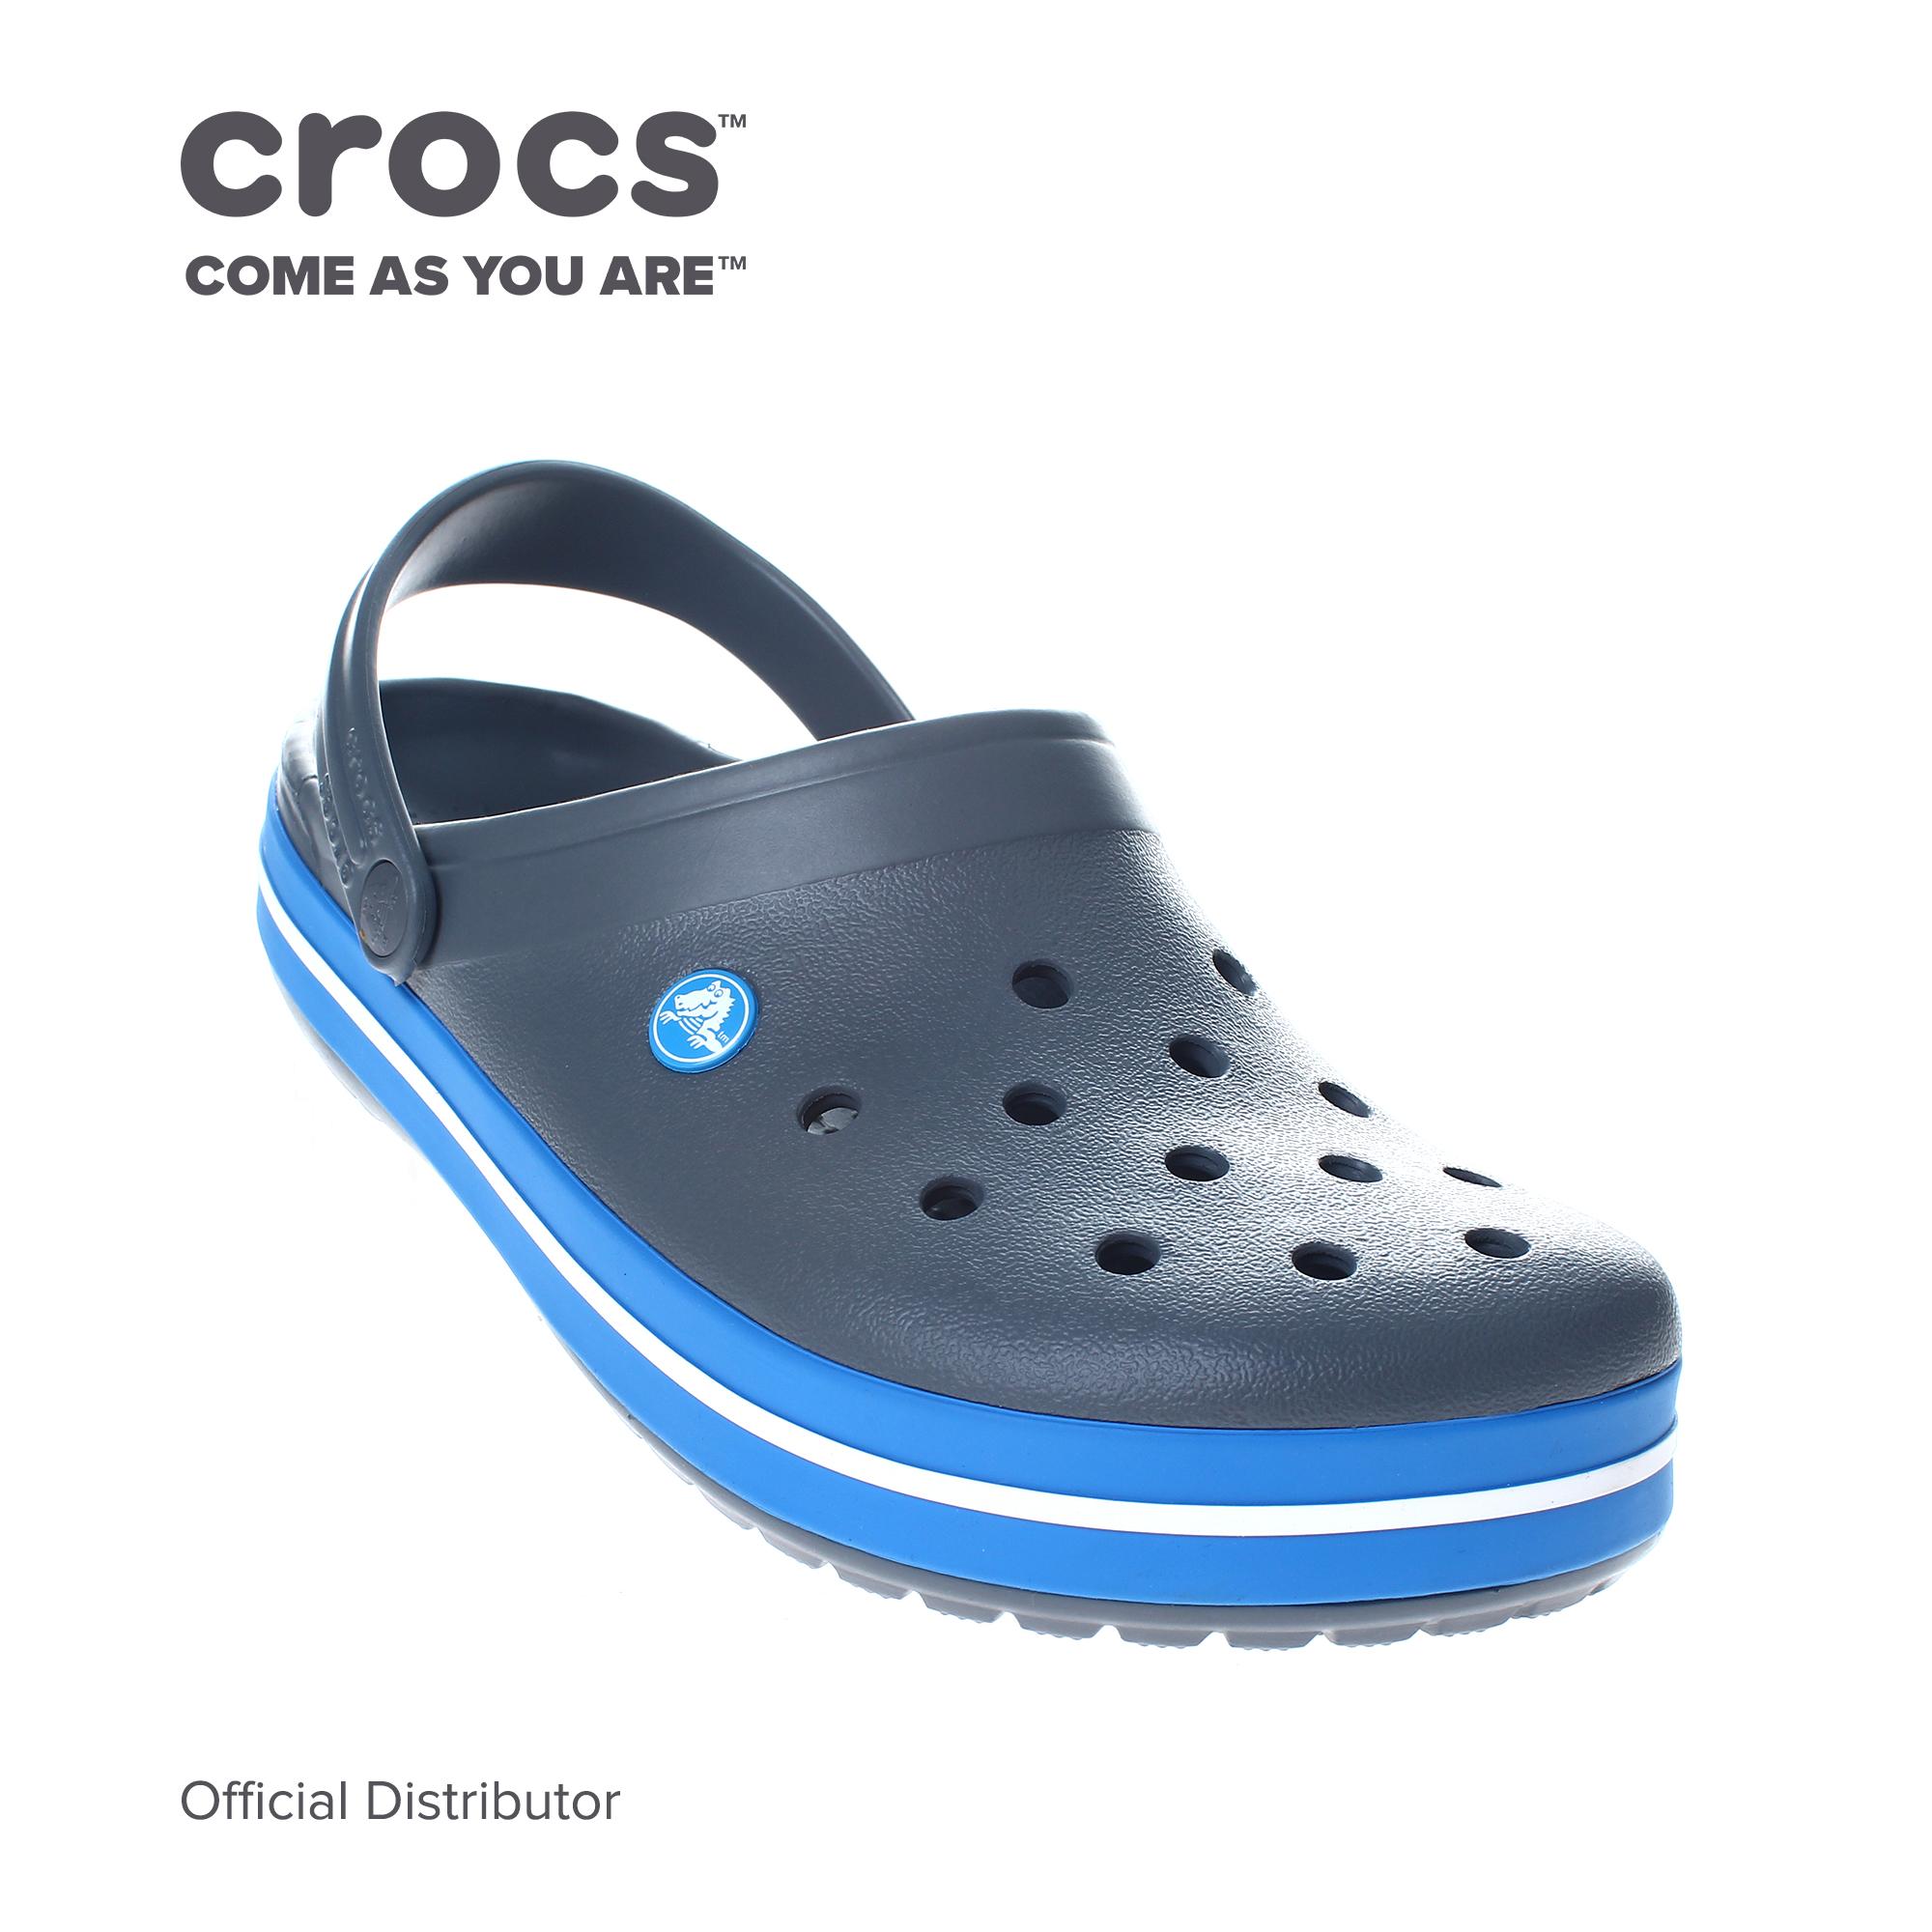 crocs philippines price 2019